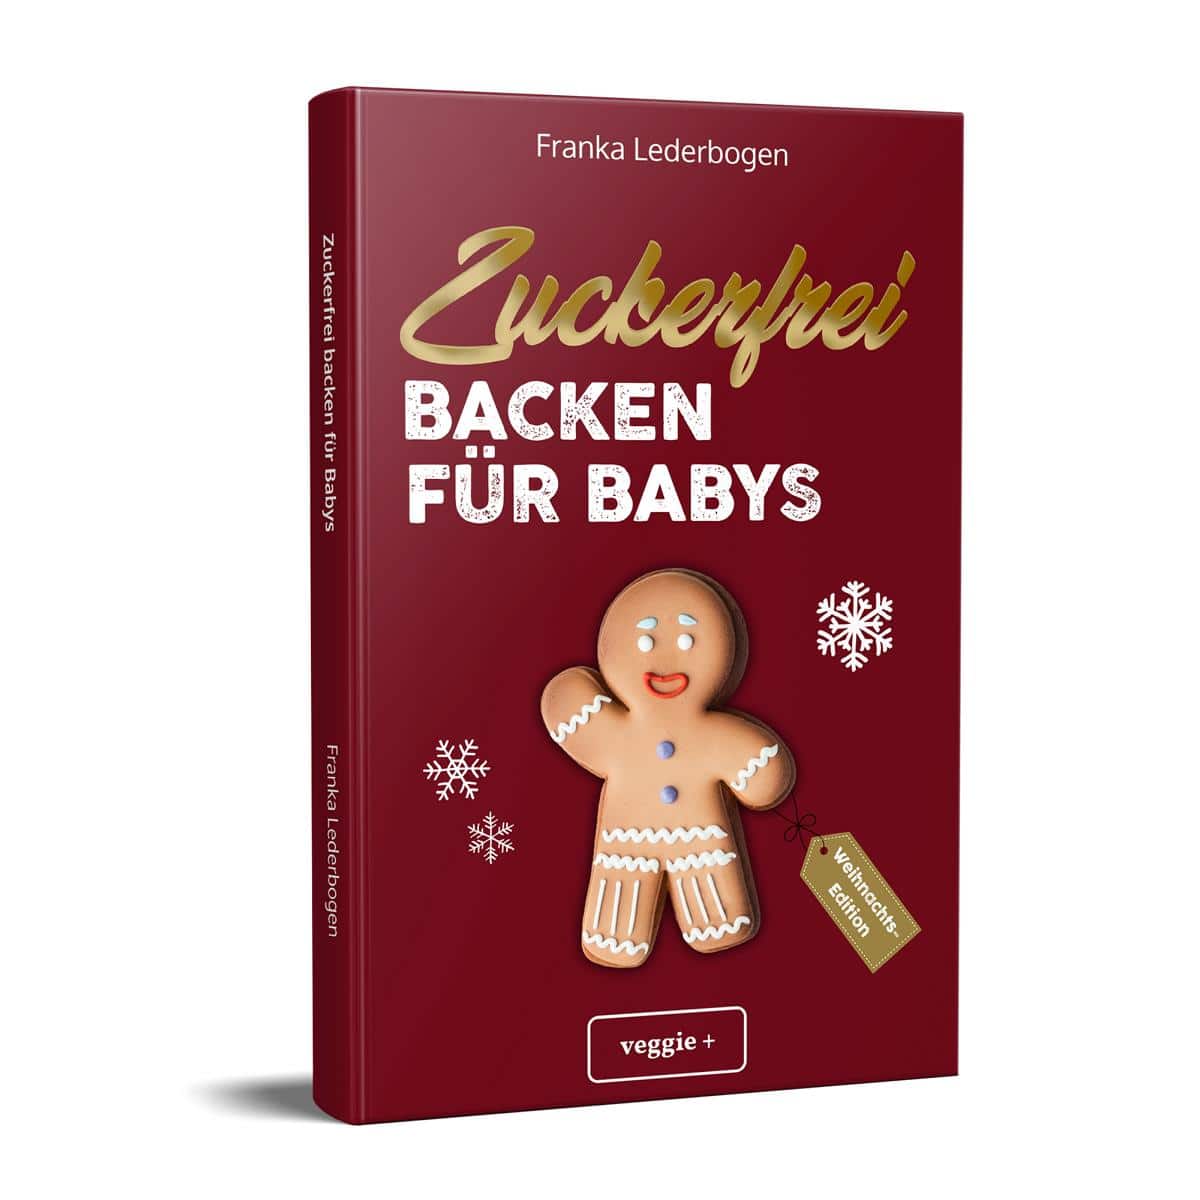 Zuckerfrei Backen für Babys (Weihnachtsedition): Das große Backbuch mit weihnachtlichen Rezepten ohne Zucker speziell für Babys und Kleinkinder von Franka Lederbogen im veggie + Verlag